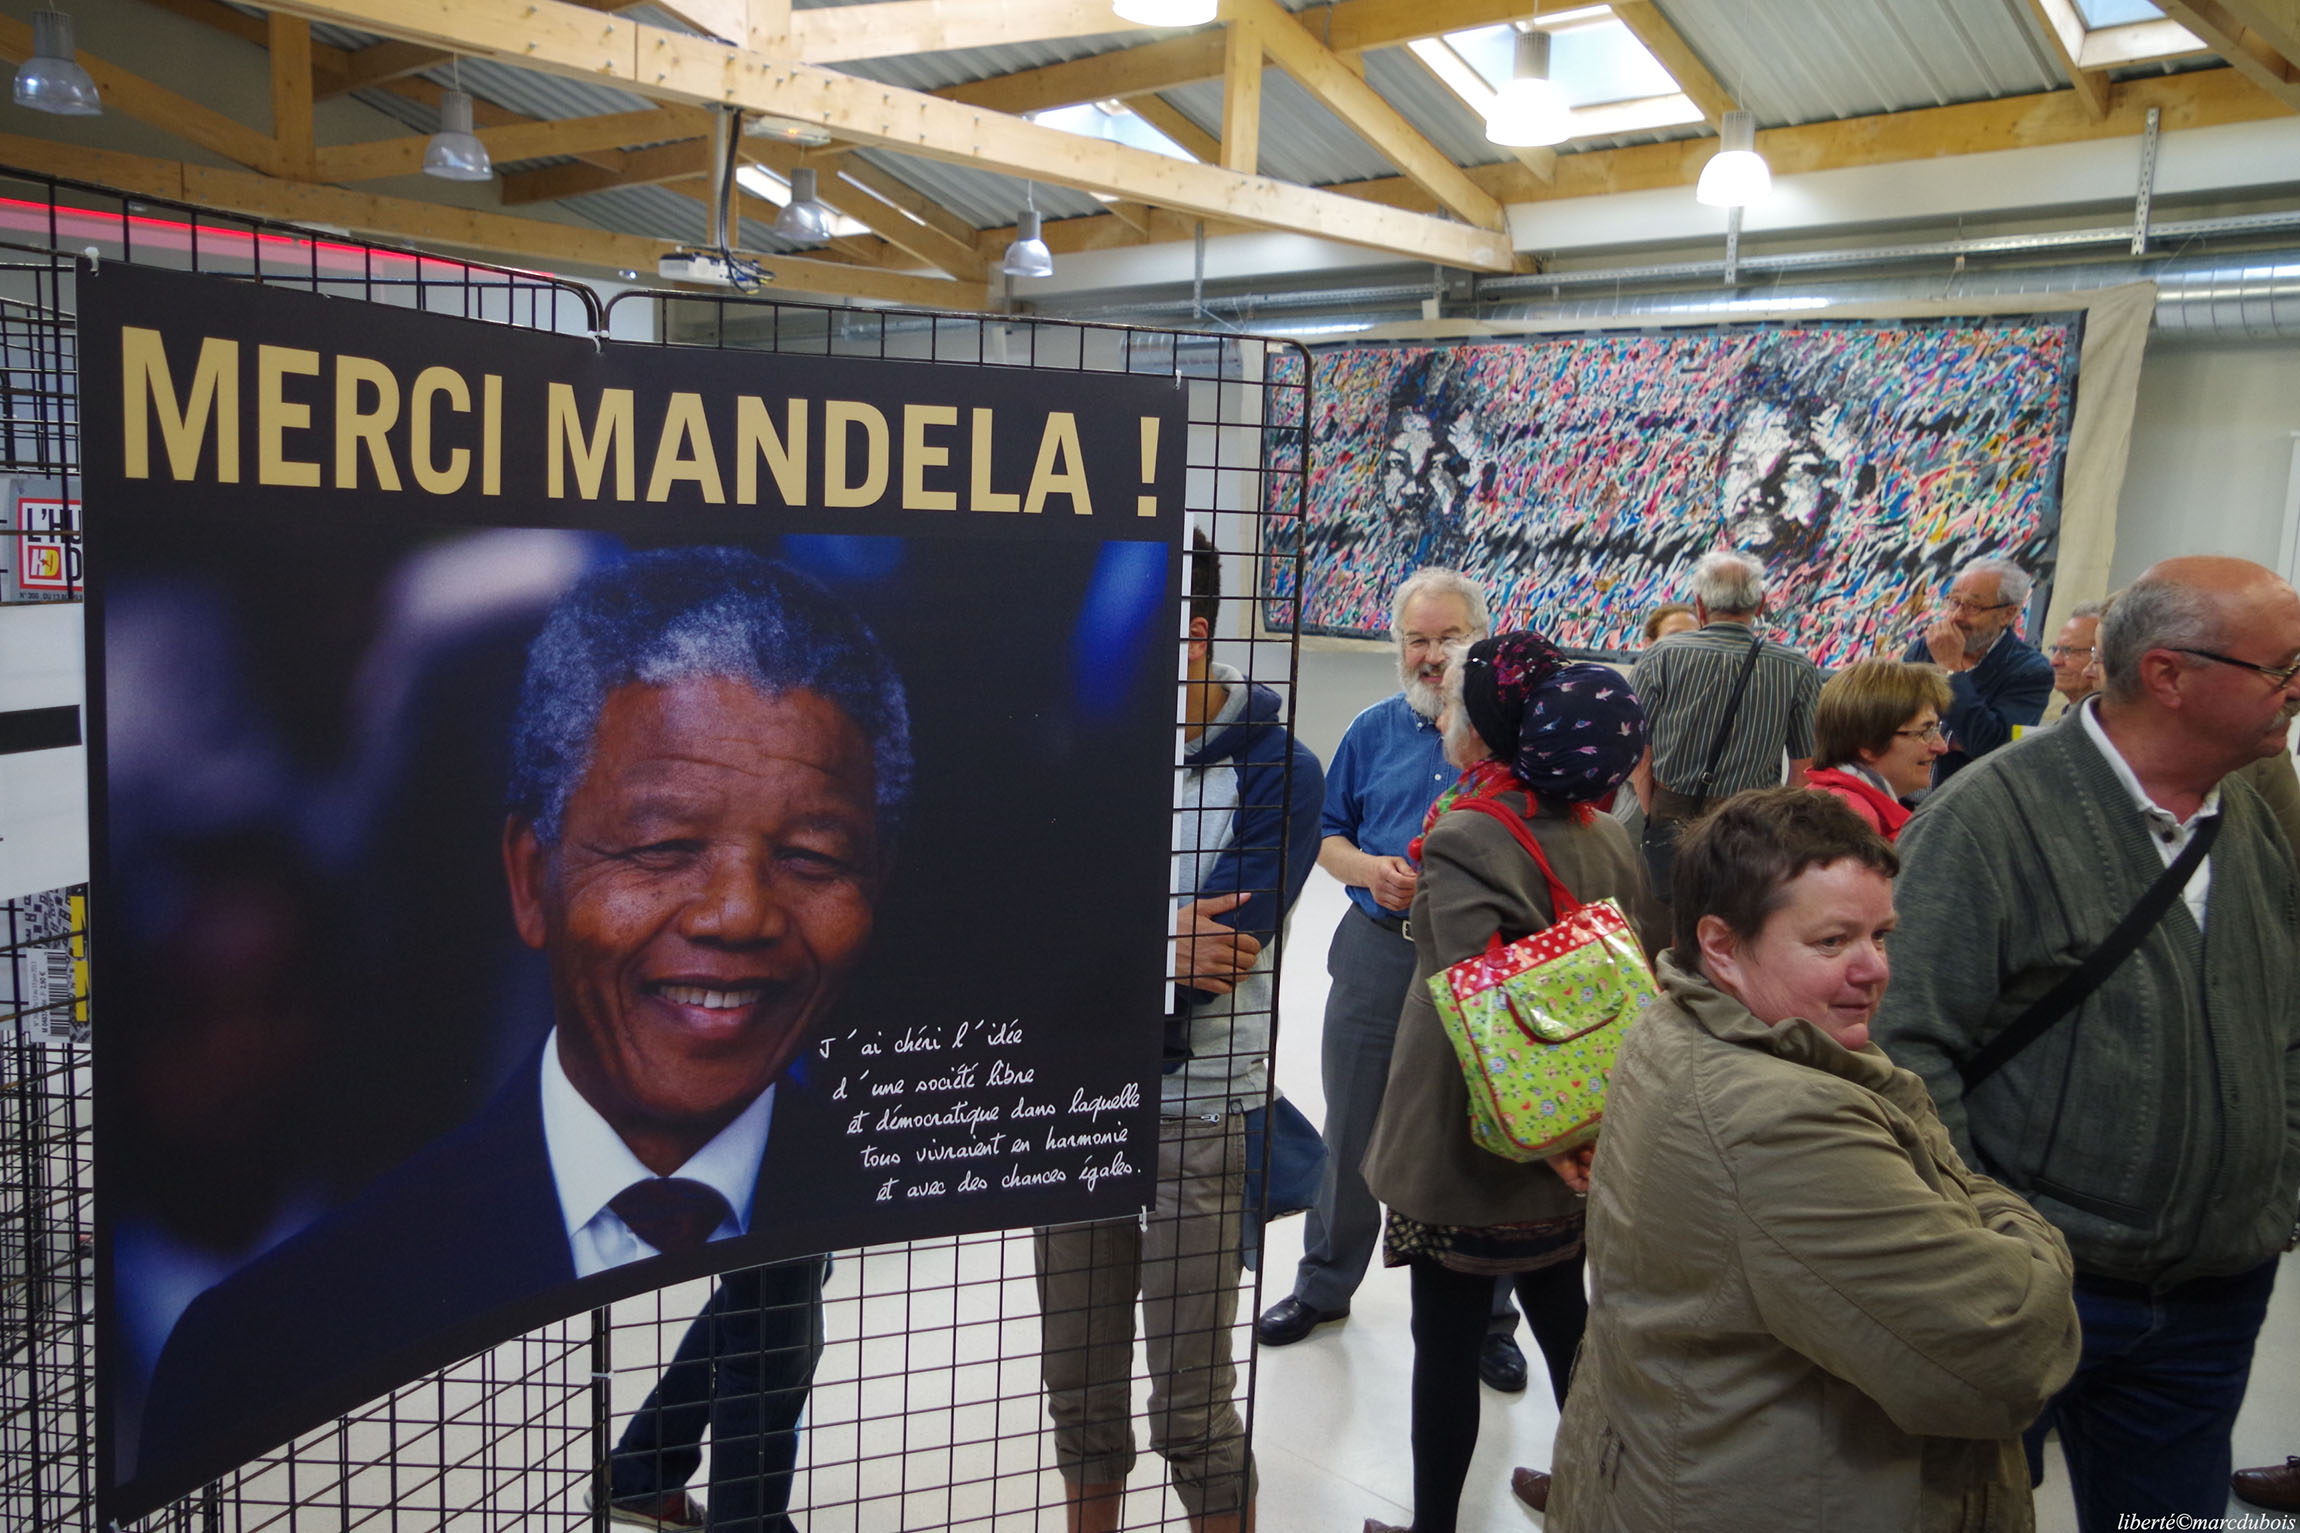 Nelson Mandela, le long combat contre l'apartheid